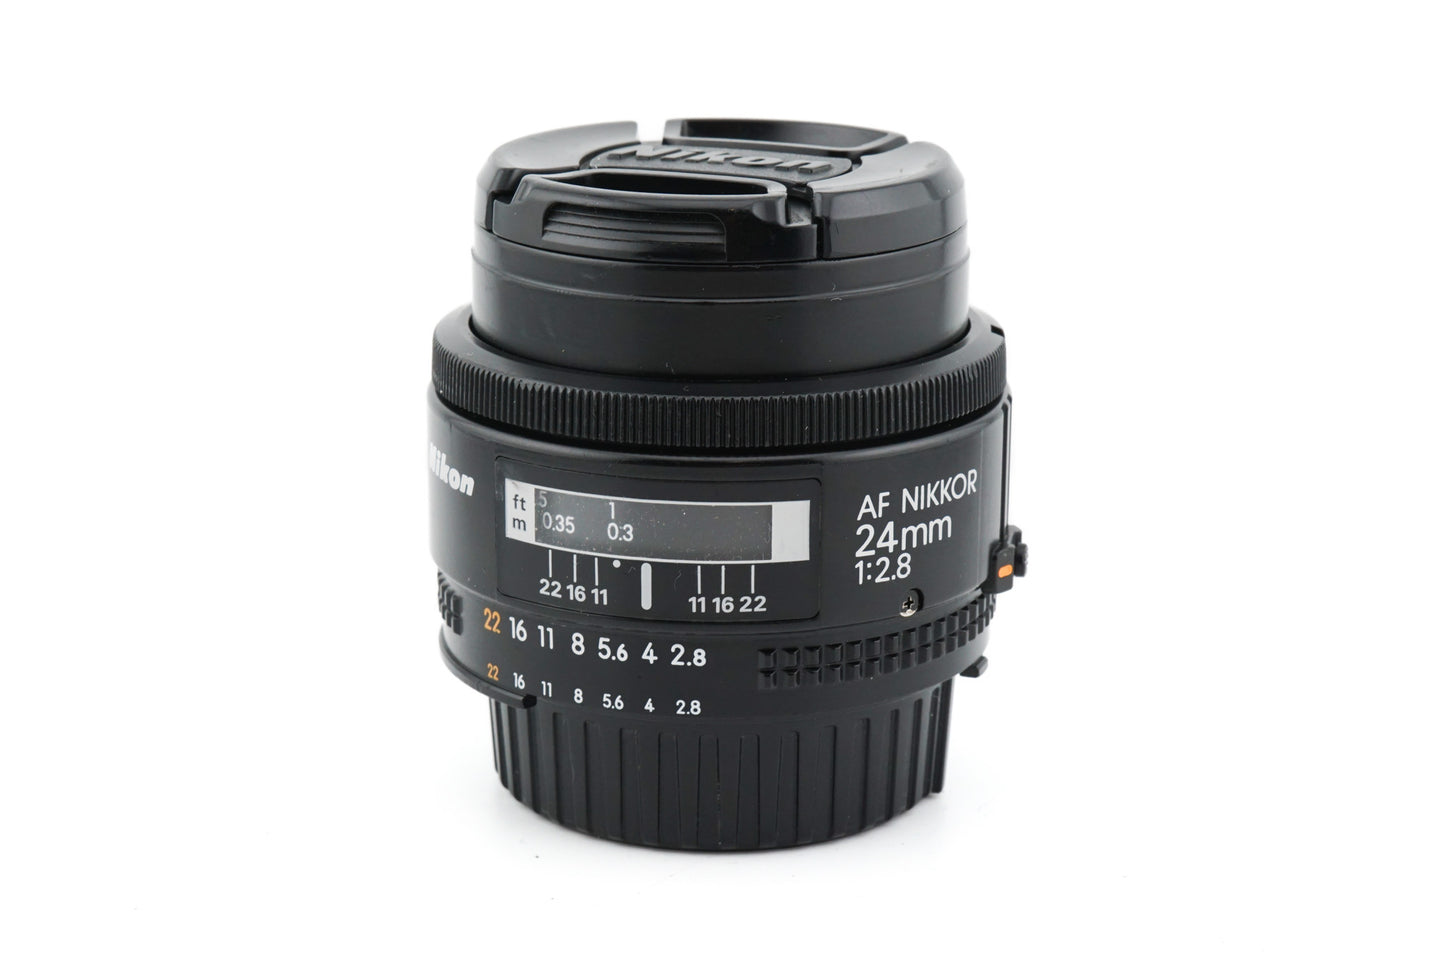 Nikon 24mm f2.8 AF Nikkor - Lens